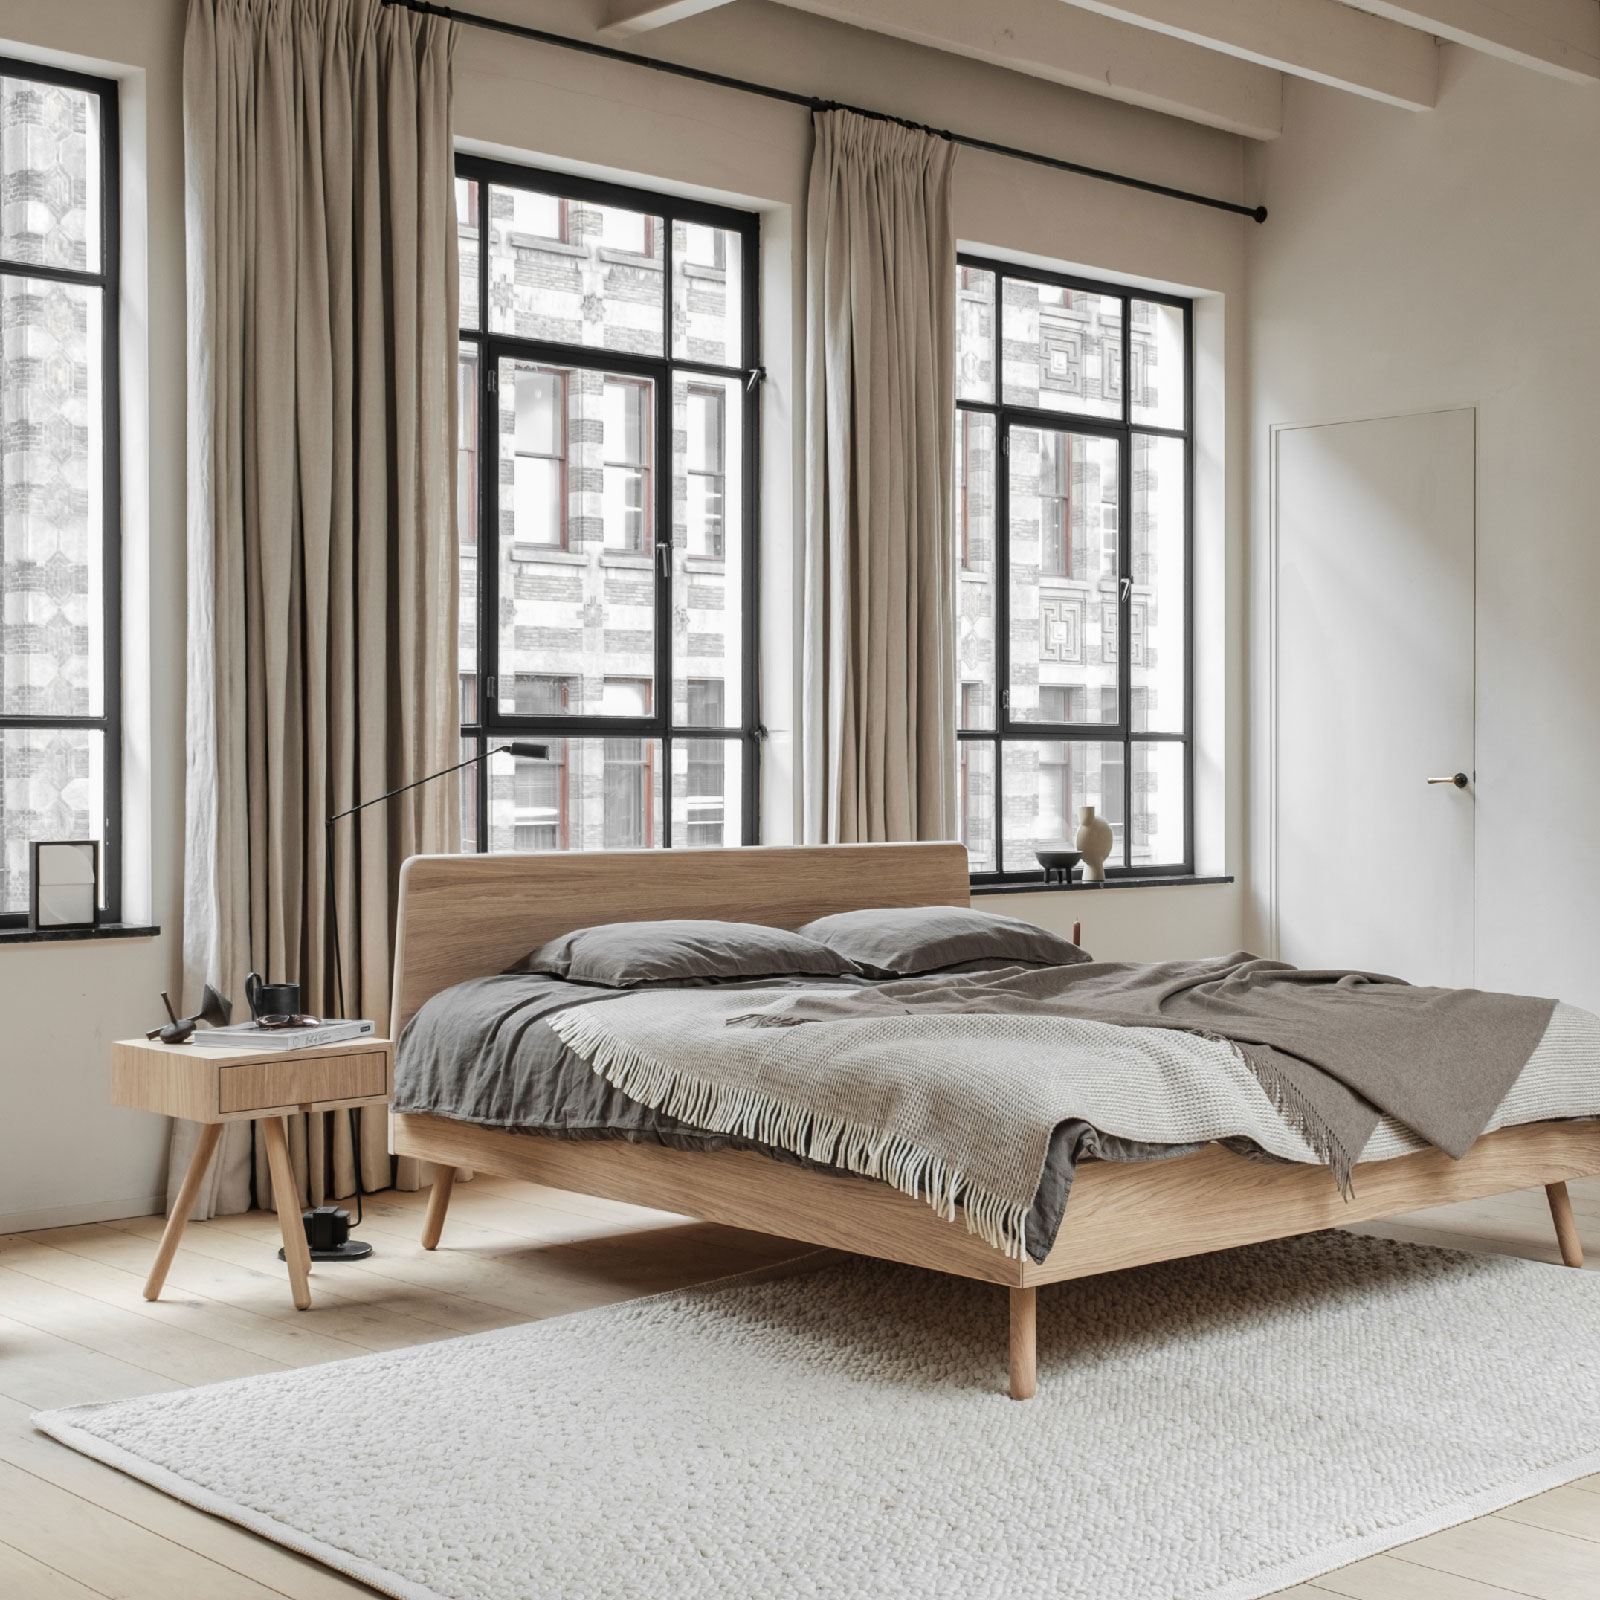 bedframe eiken houten bed met grijze bedlinnen